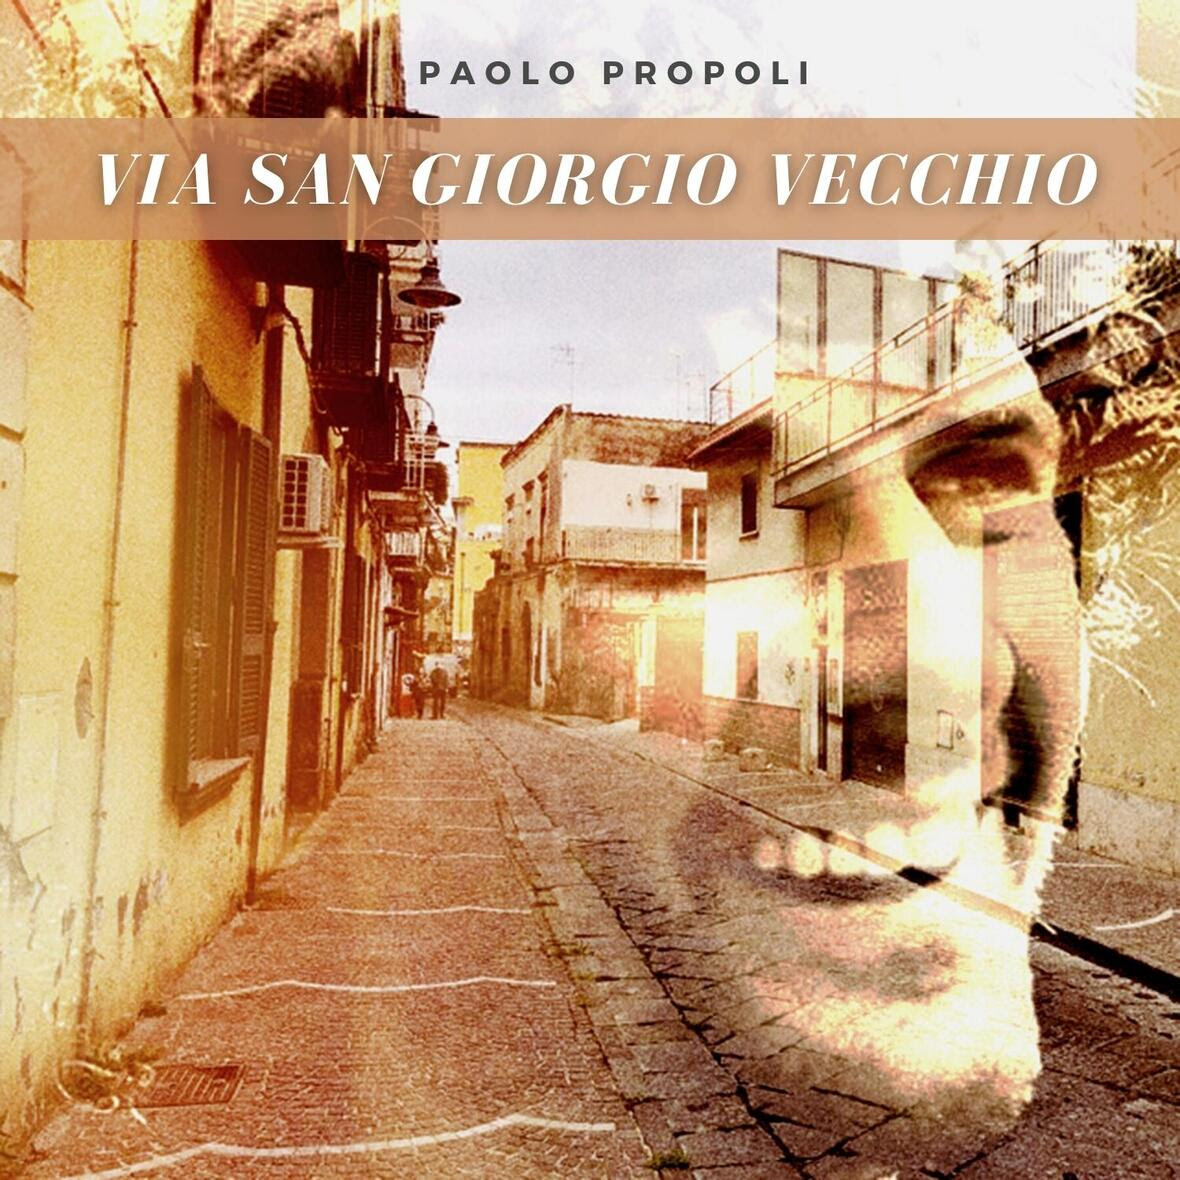 Dedicato a Massimo Troisi il nuovo singolo di Paolo Propoli “Via San Giorgio Vecchio”